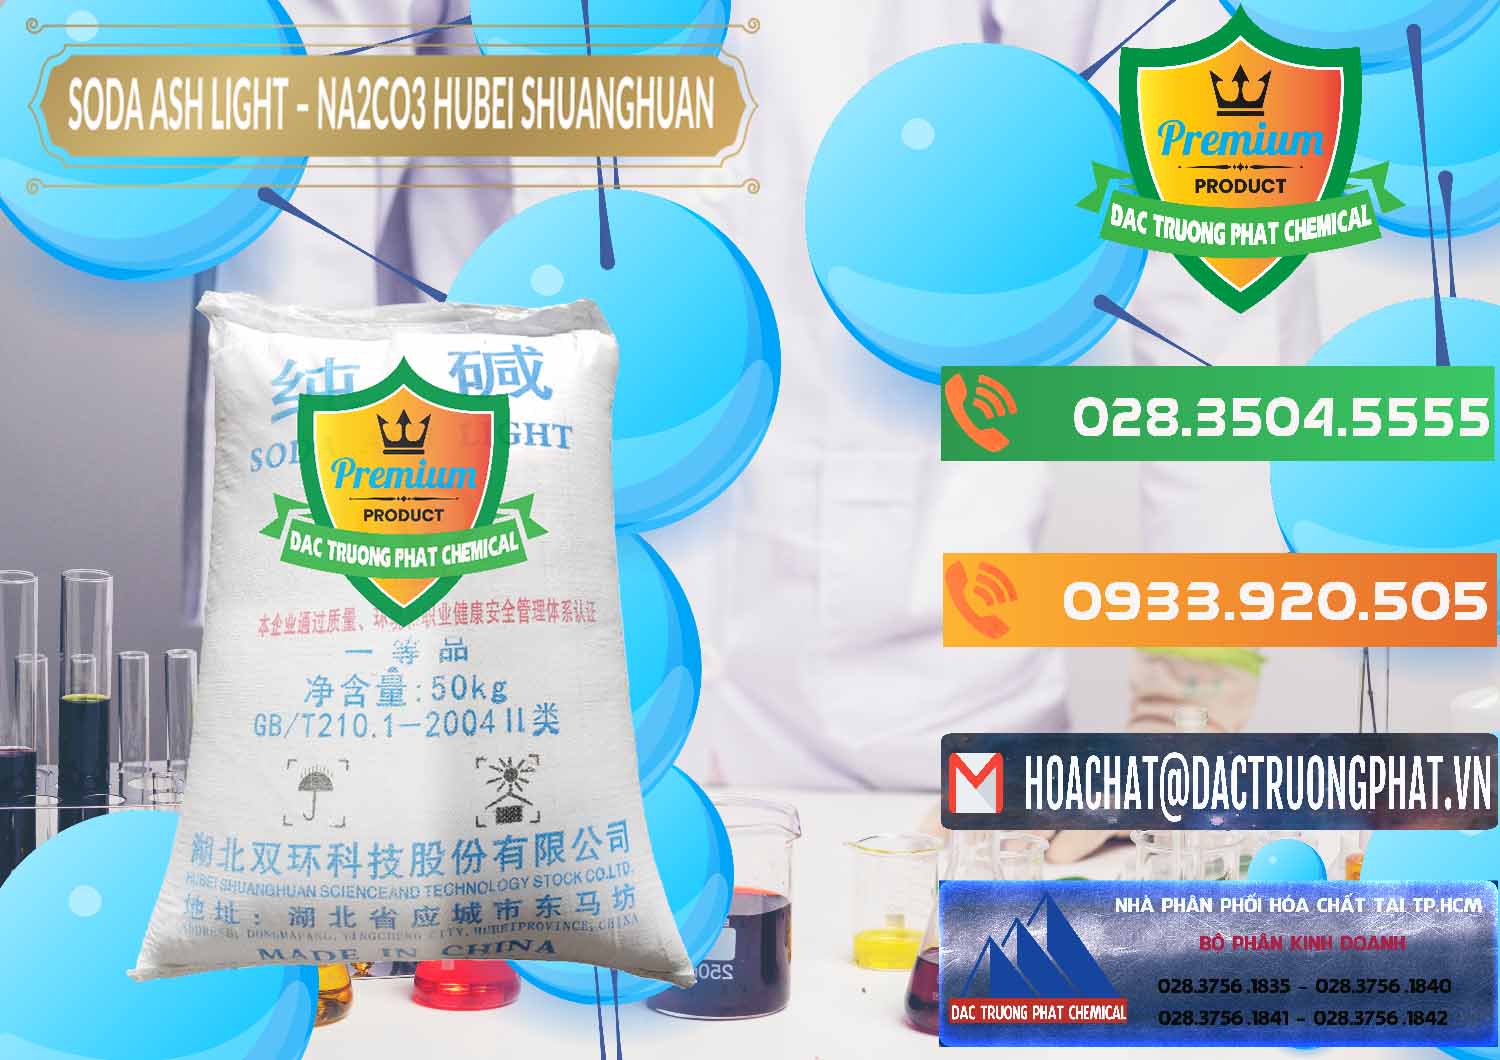 Cty bán & cung cấp Soda Ash Light - NA2CO3 2 Vòng Tròn Hubei Shuanghuan Trung Quốc China - 0130 - Đơn vị chuyên bán ( phân phối ) hóa chất tại TP.HCM - hoachatxulynuoc.com.vn